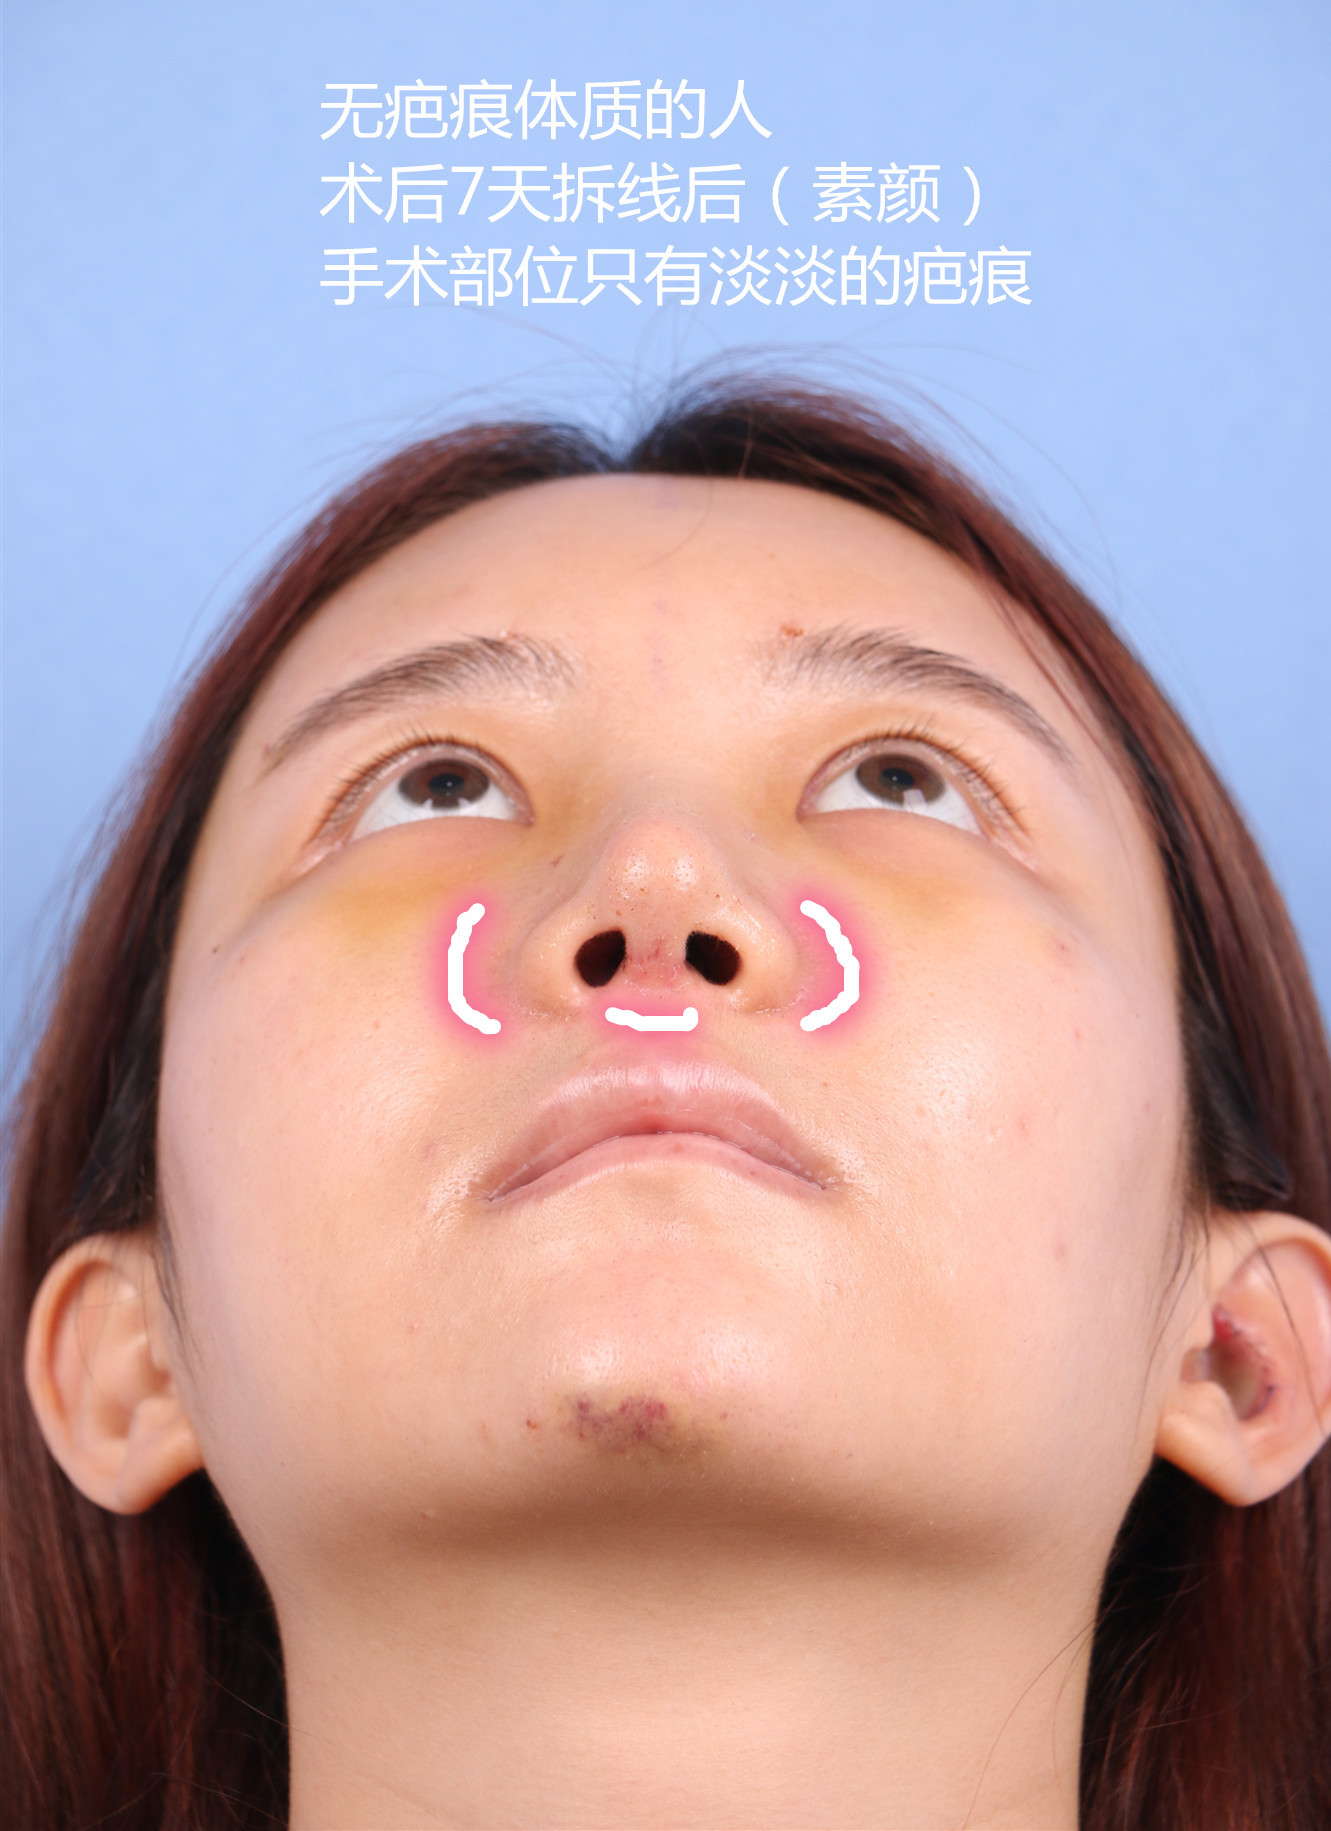 97隆鼻术后疤痕增生成因及应对方法96做完隆鼻手术一段